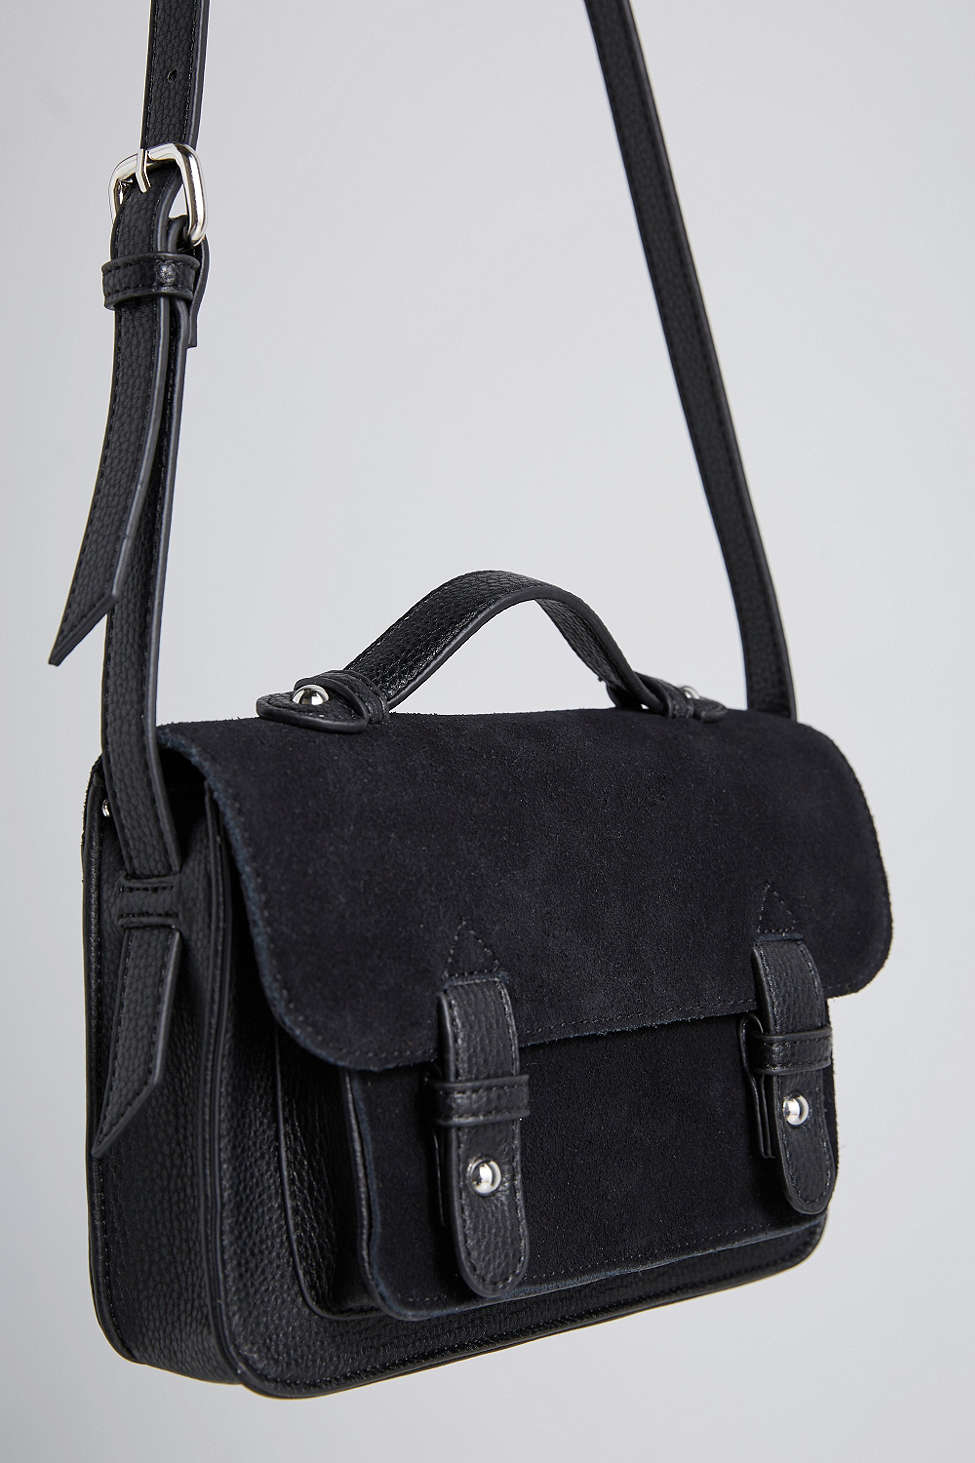 2018 New Womens Shoulder Bag Messenger Bag Personality Robot Handbag Black Color : Black, Size : 20.5820.5CM